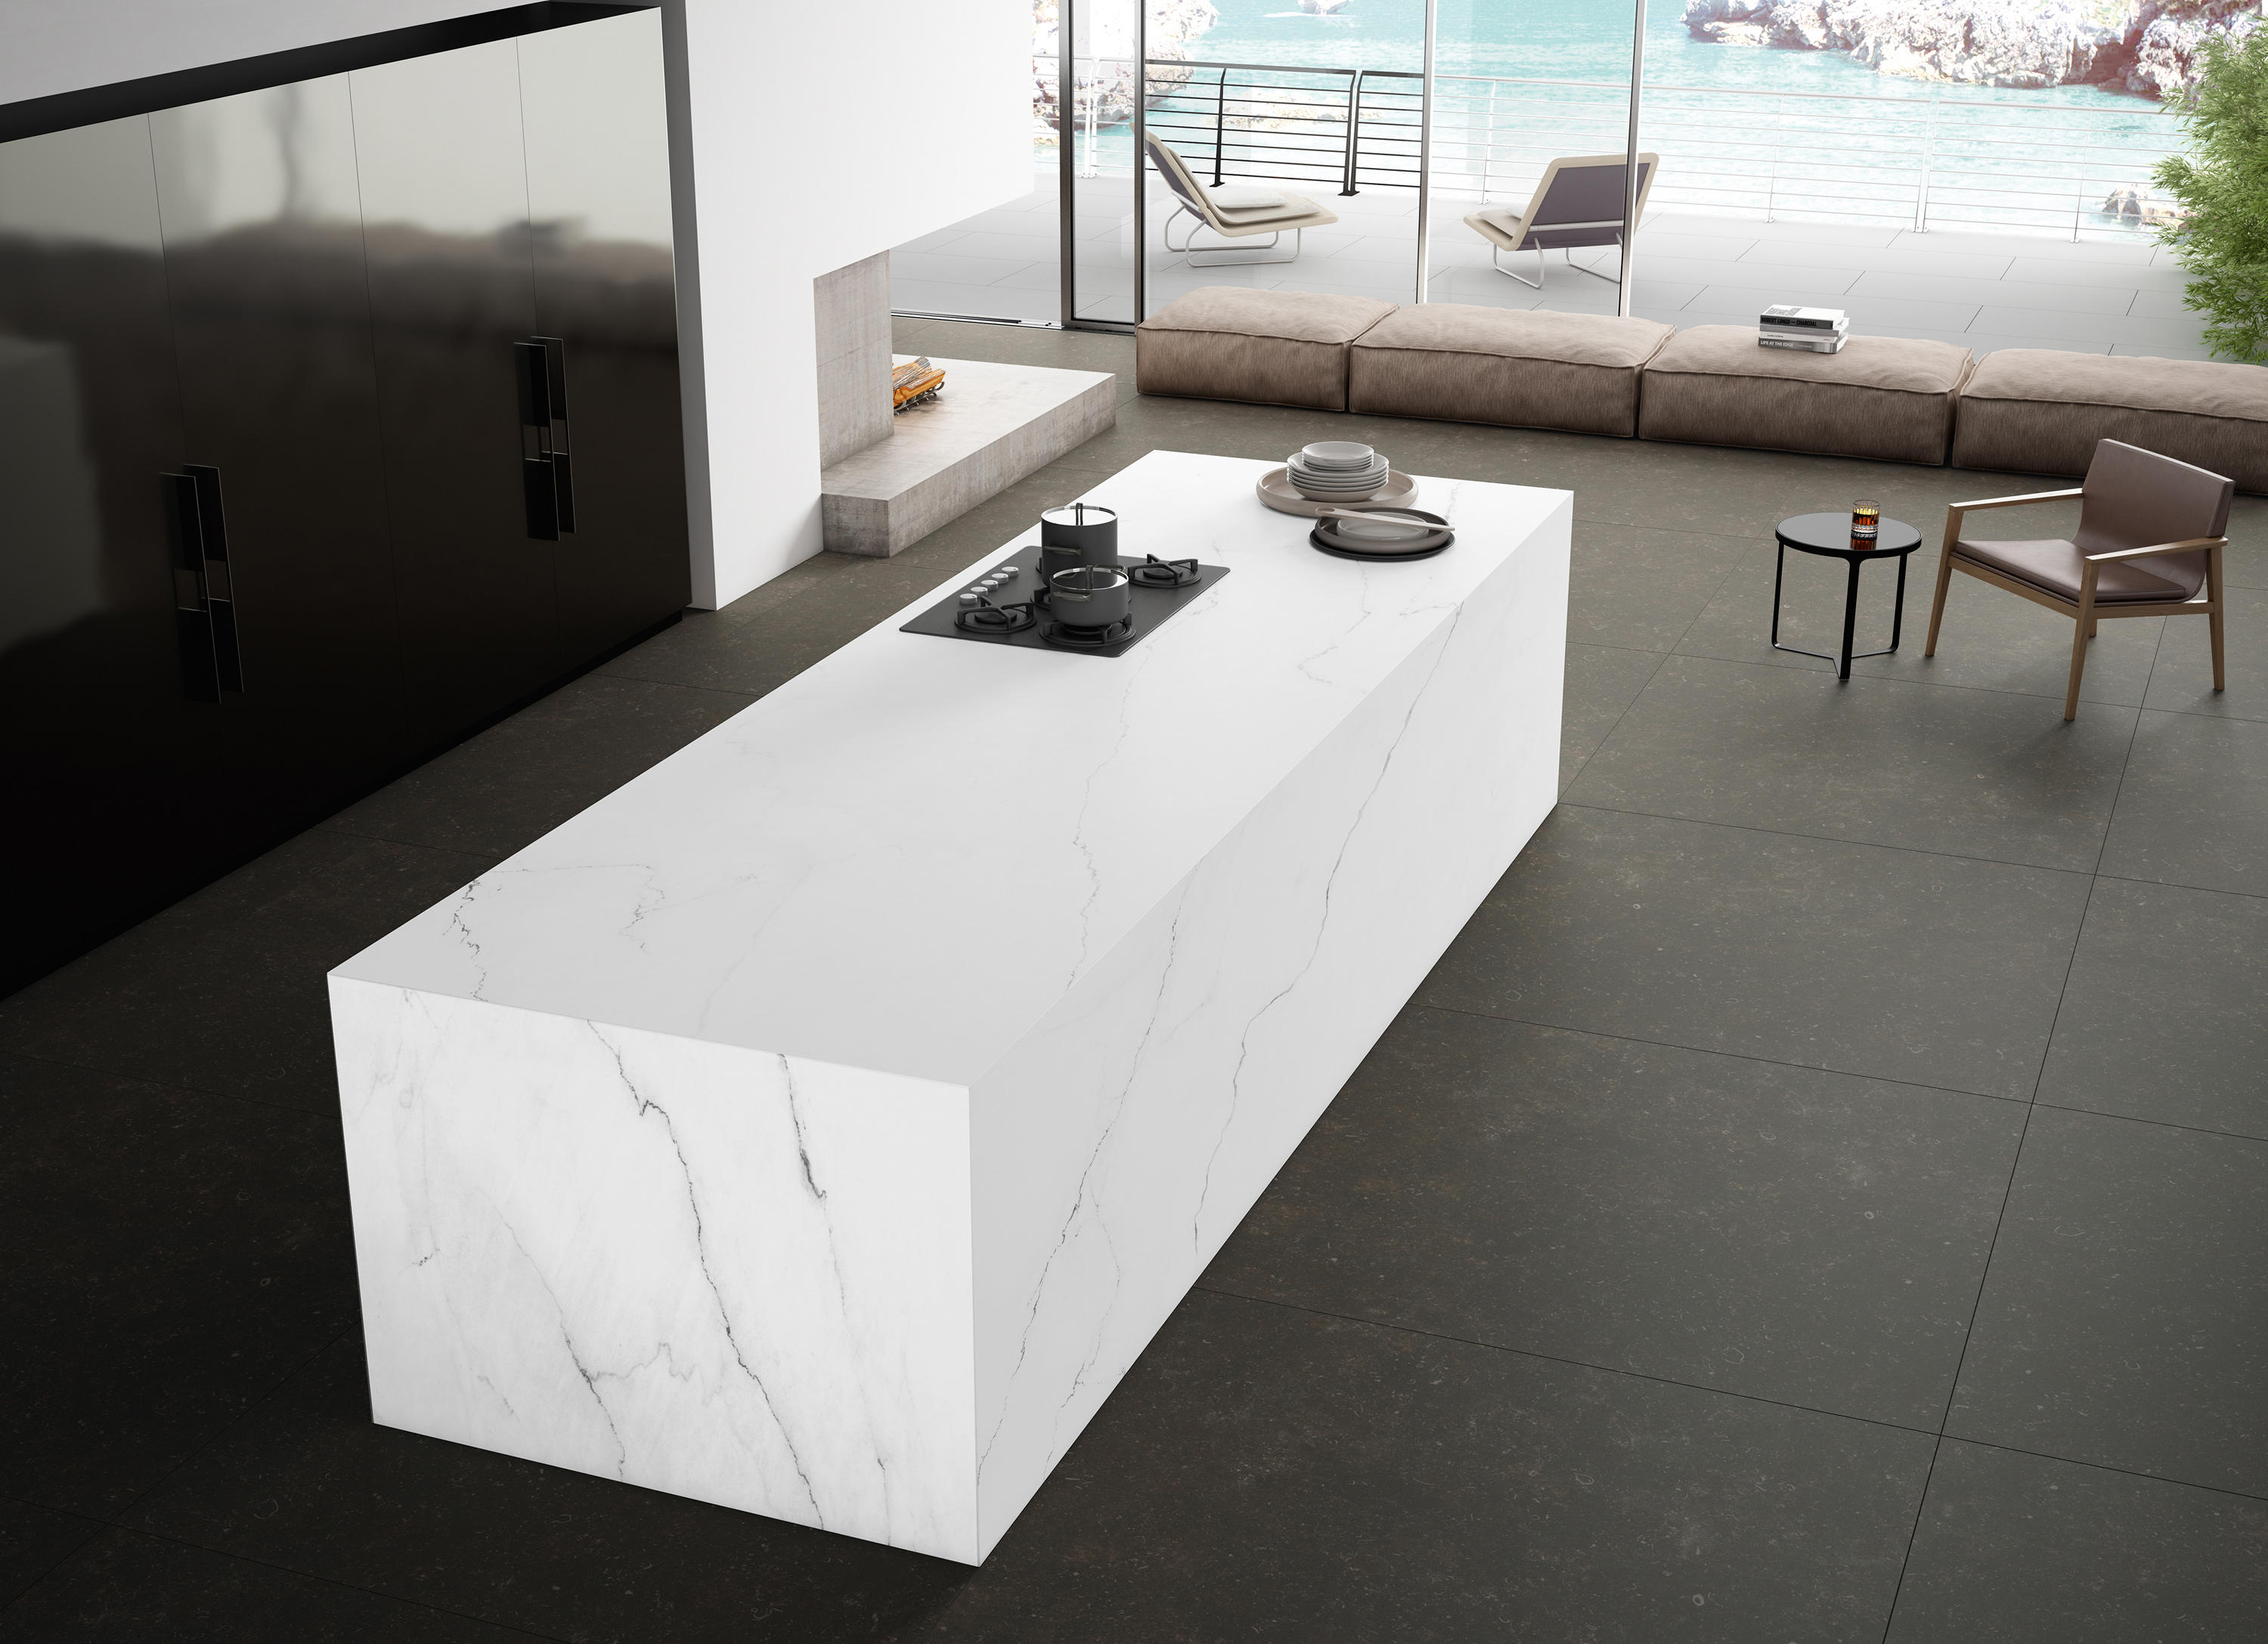 Calacatta Lincoln & designer furniture | Architonic